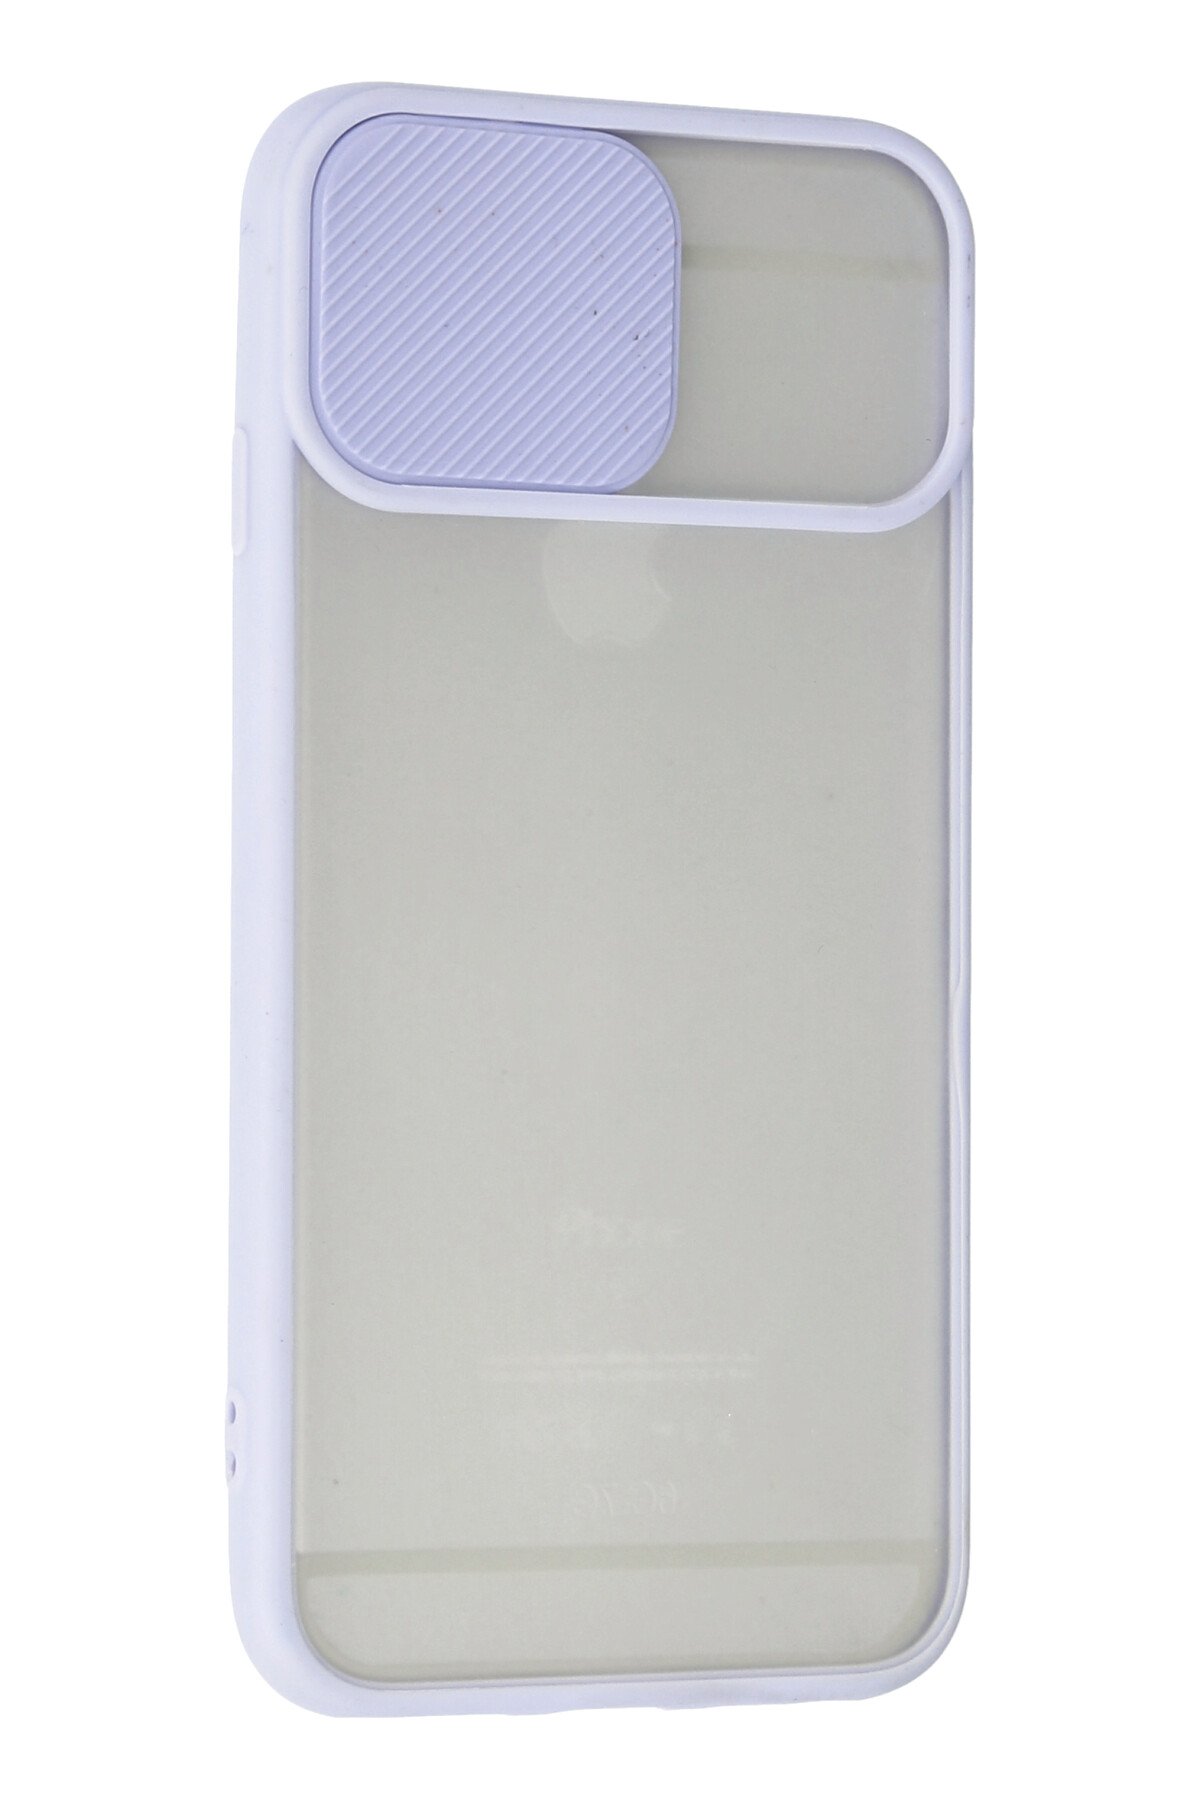 Newface iPhone 6 Plus Kılıf Nano içi Kadife  Silikon - Lacivert